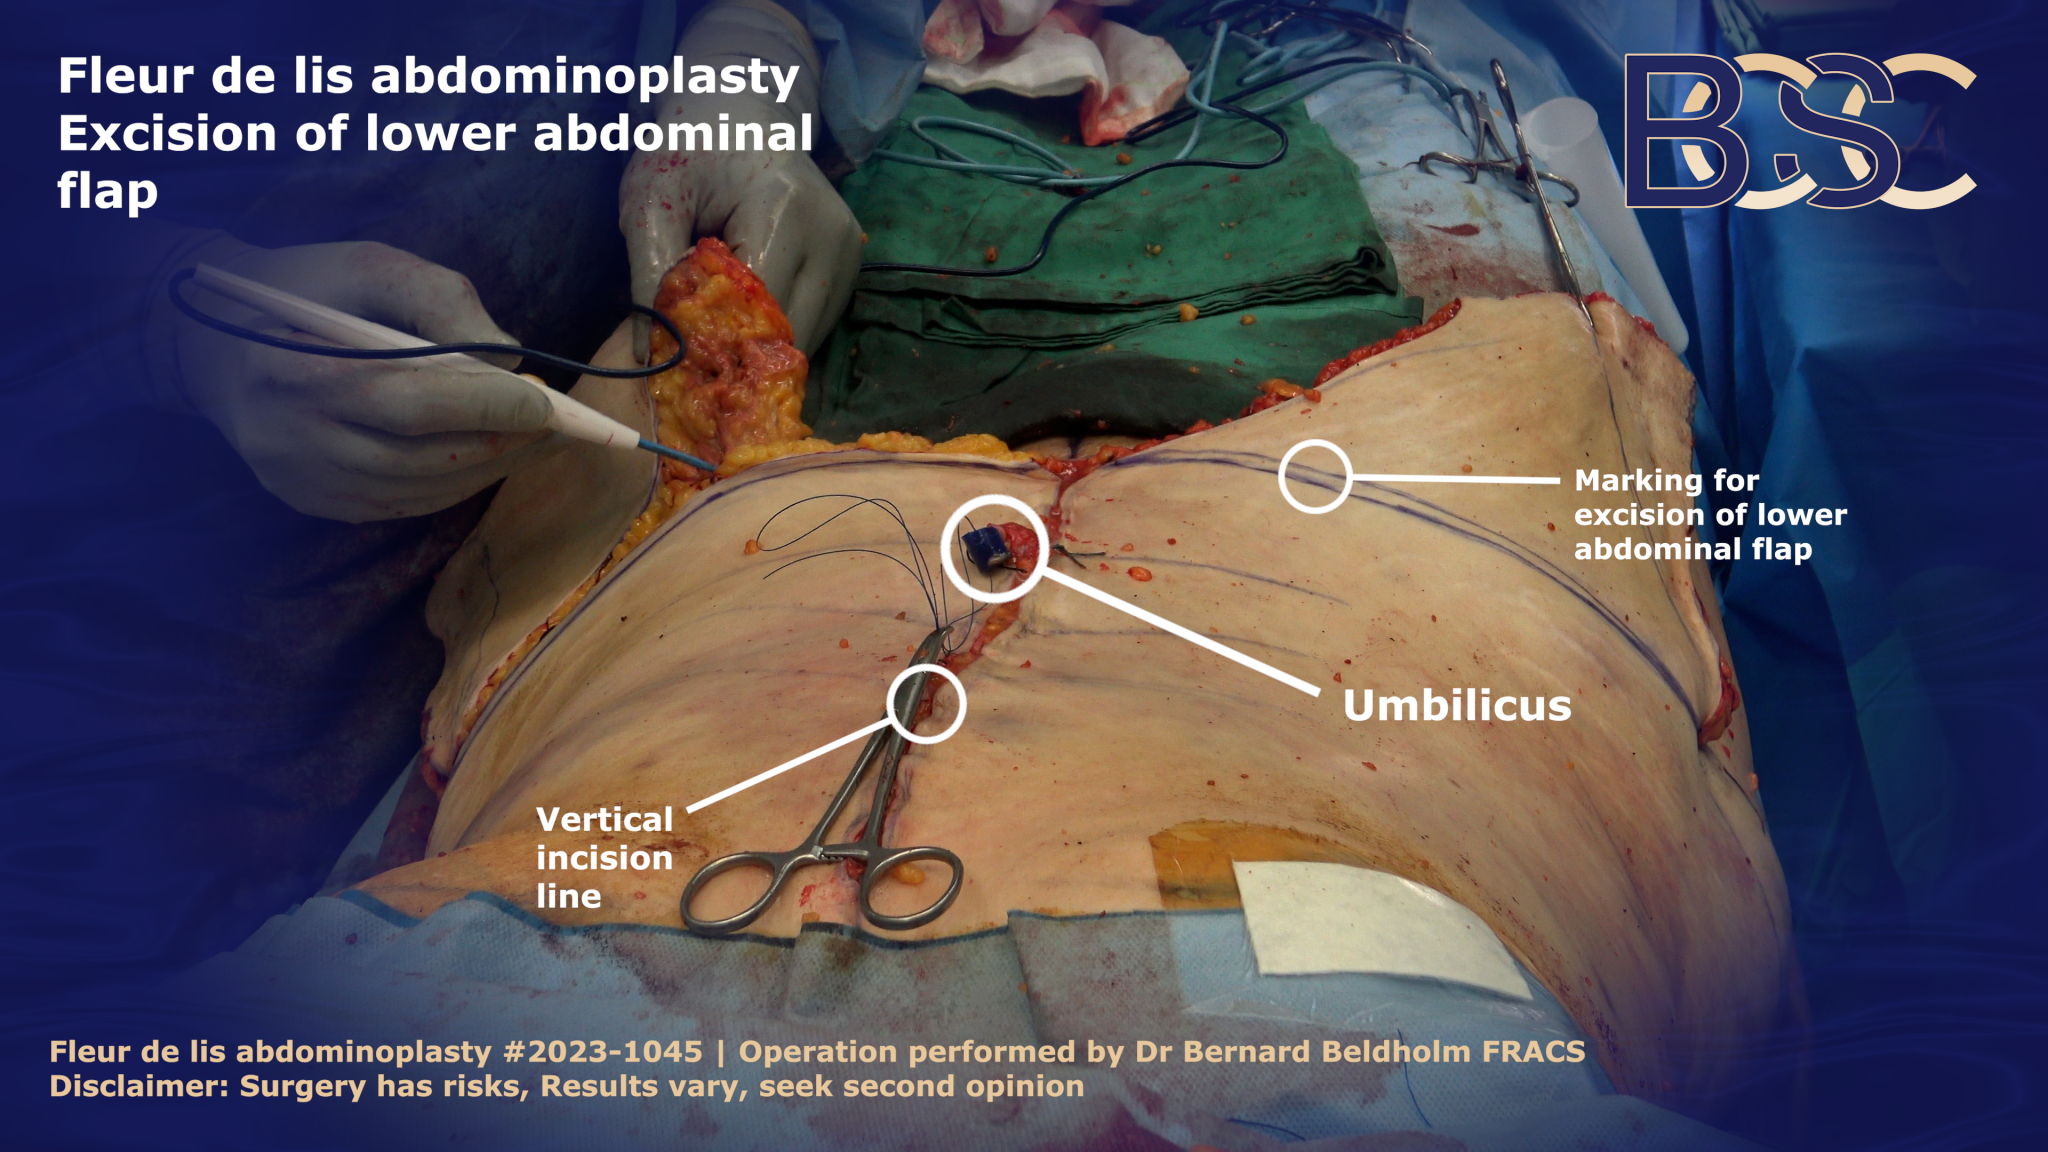 Excision of lower abdominal flap in Fleur de lis abdominoplasty | BCSC